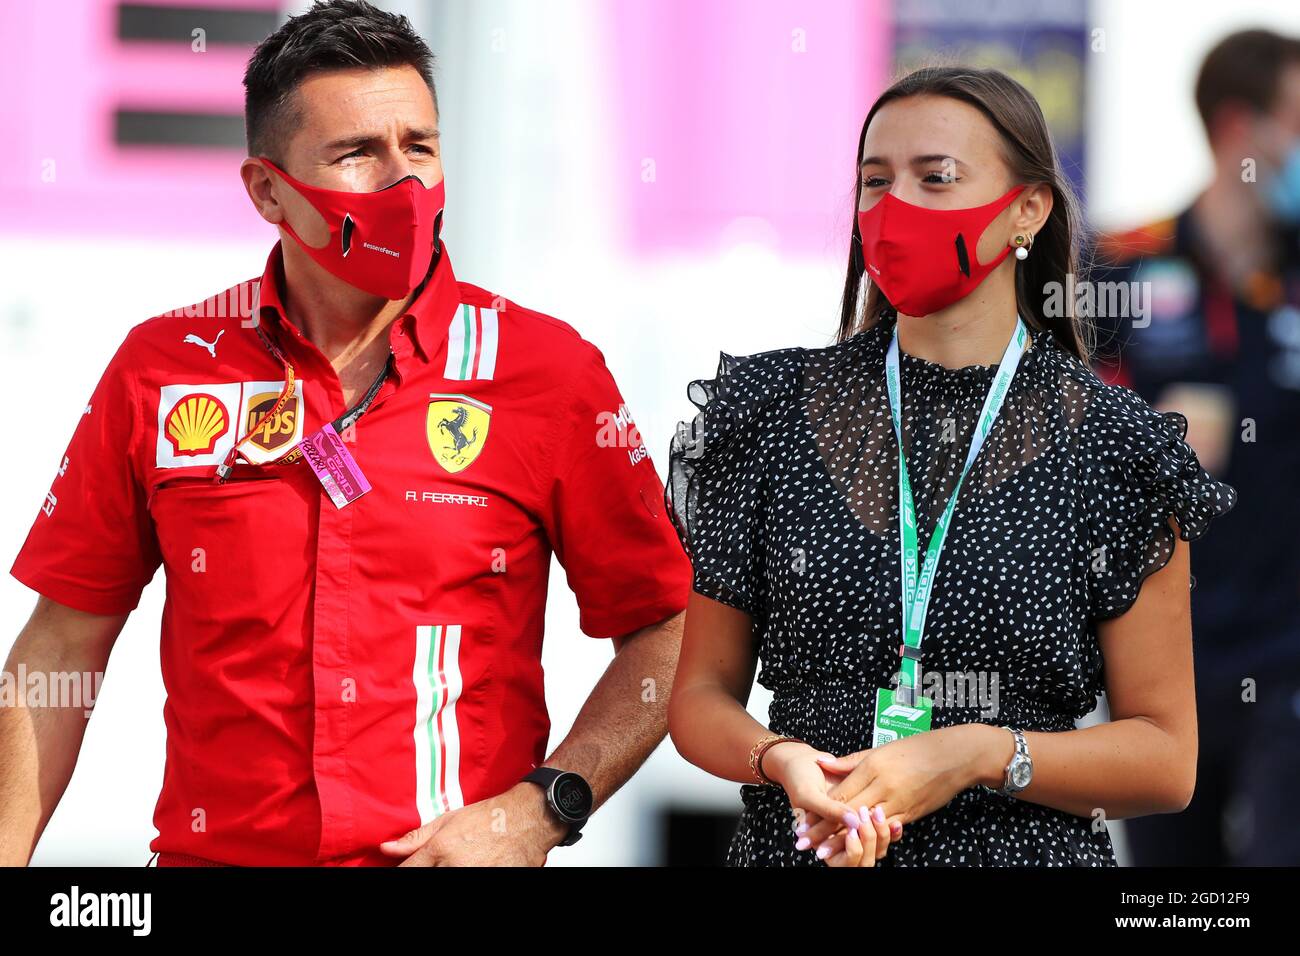 Charlotte sine (mon), petite amie de Charles Leclerc (mon) Ferrari. Grand Prix d'Italie, dimanche 6 septembre 2020. Monza Italie. Banque D'Images